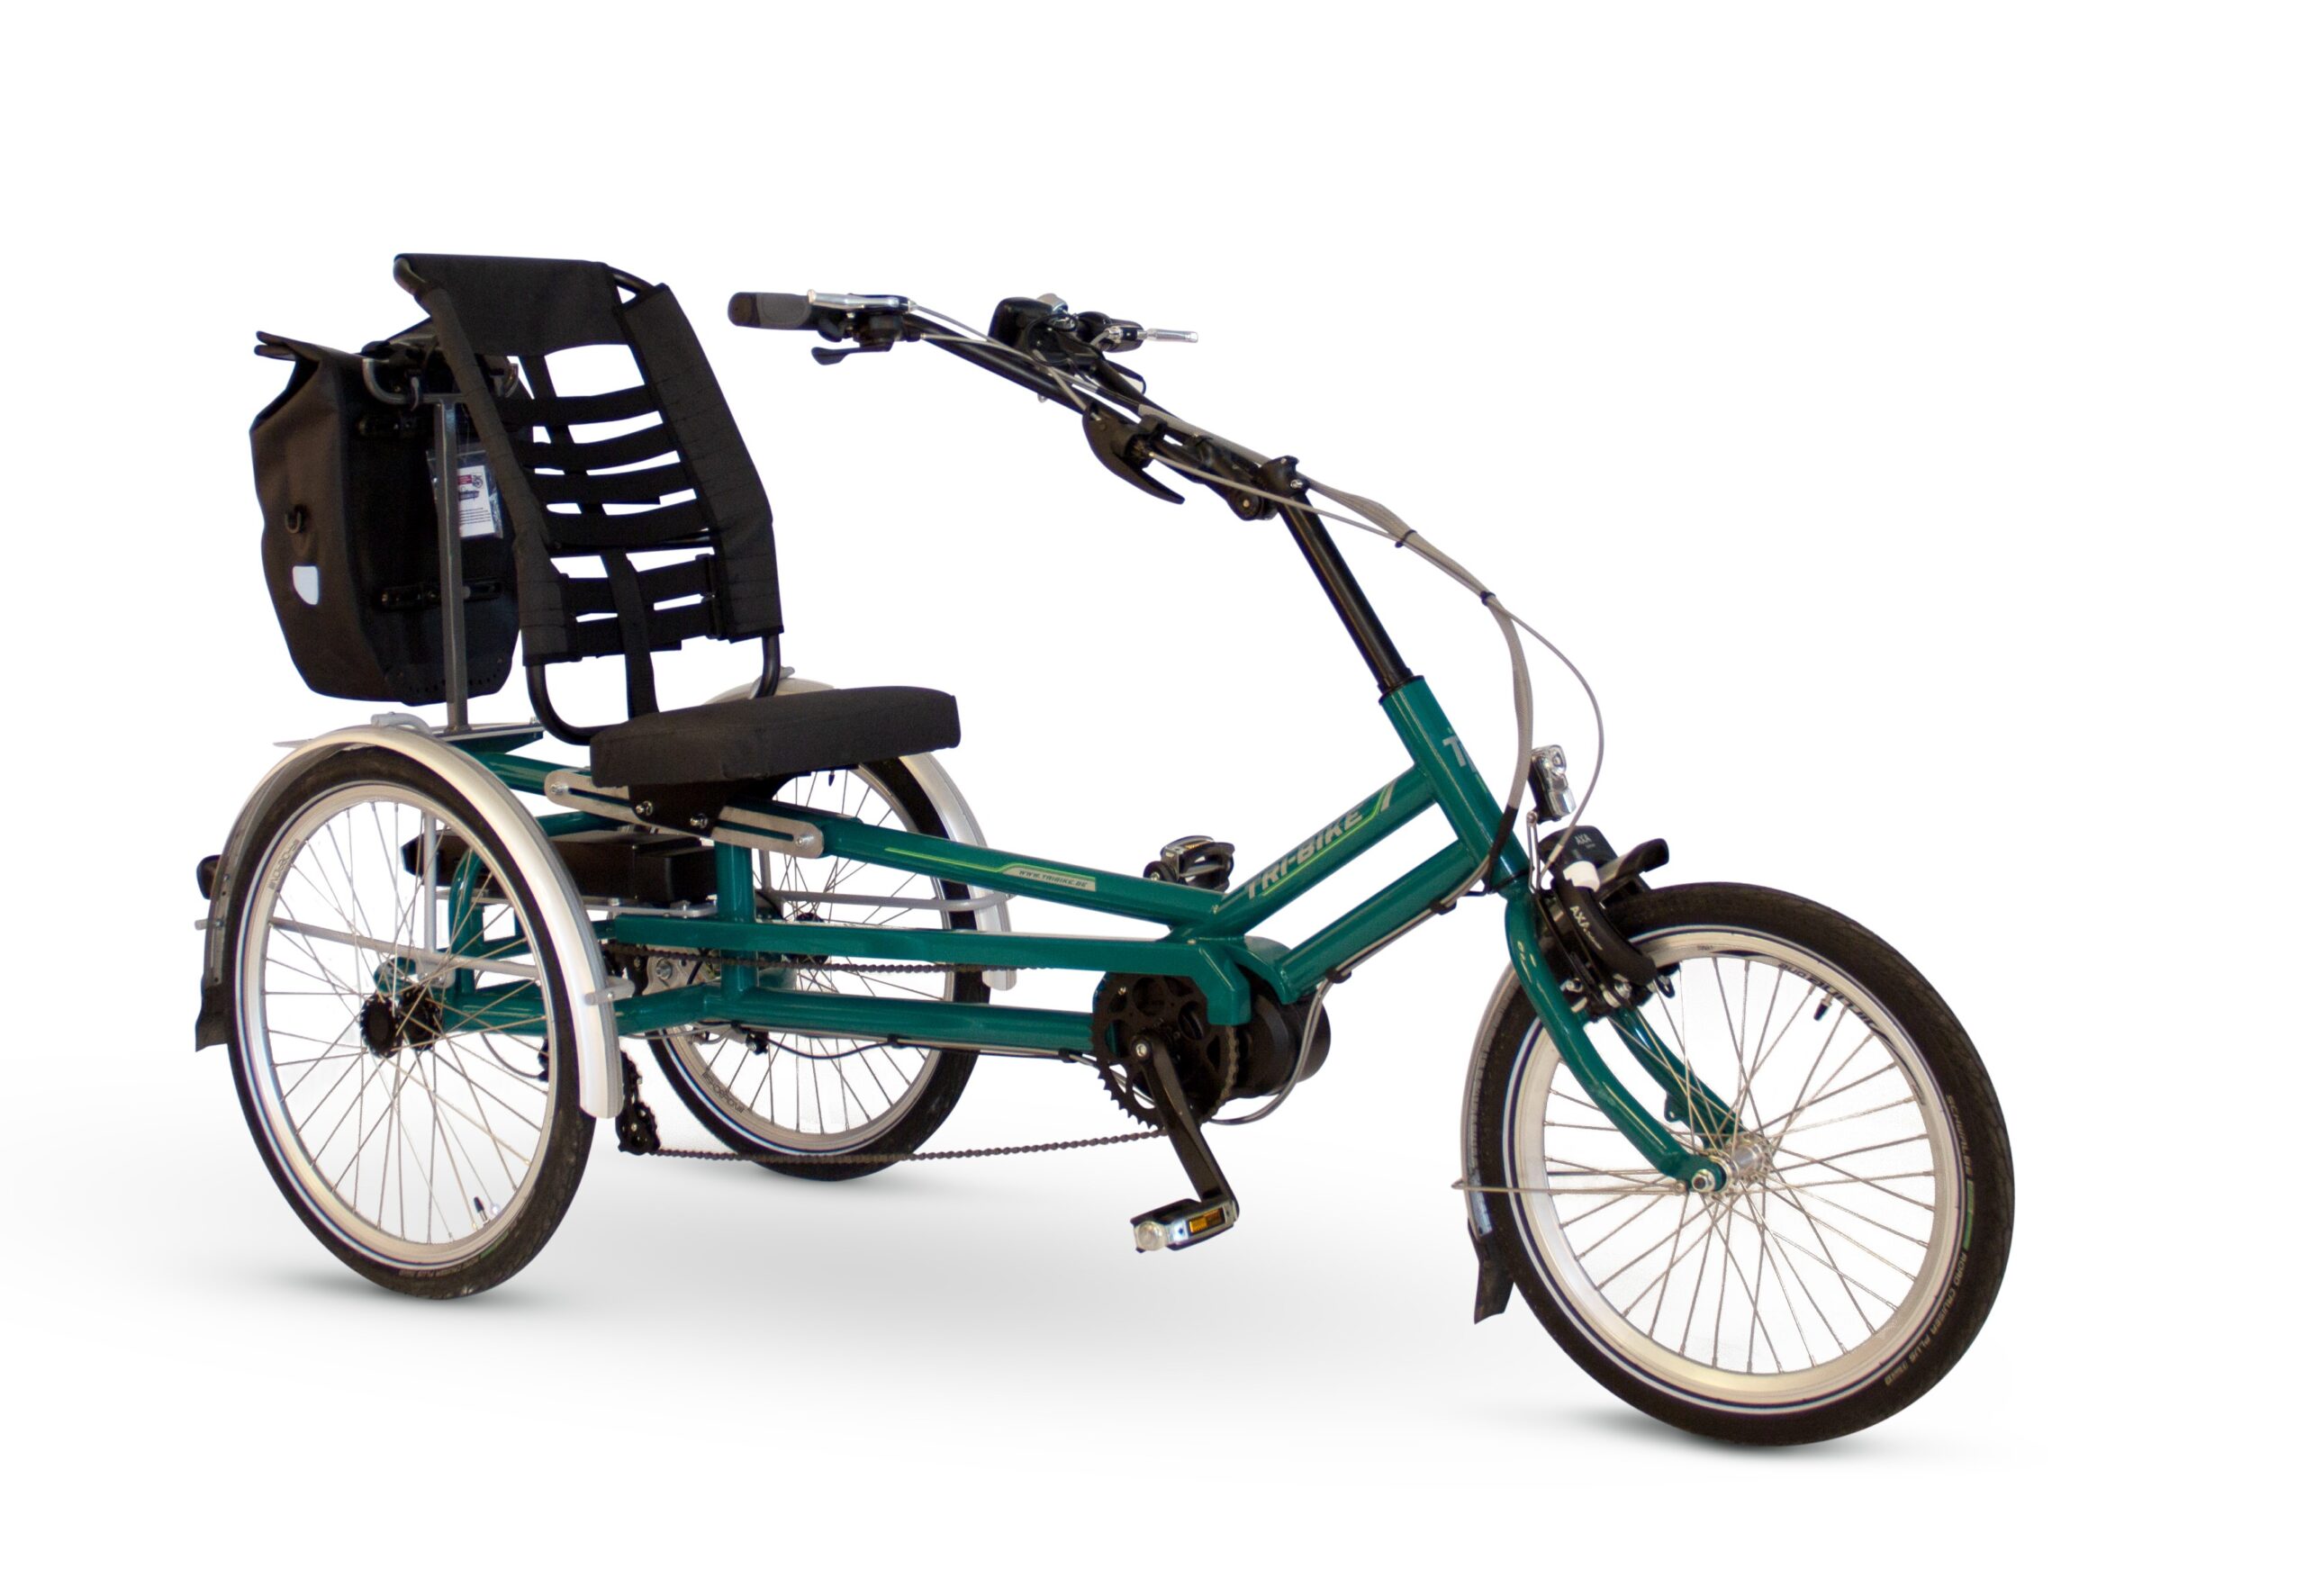 De Tri-Bike Classic Y frame is een klassieke driewielfiets voor volwassenen